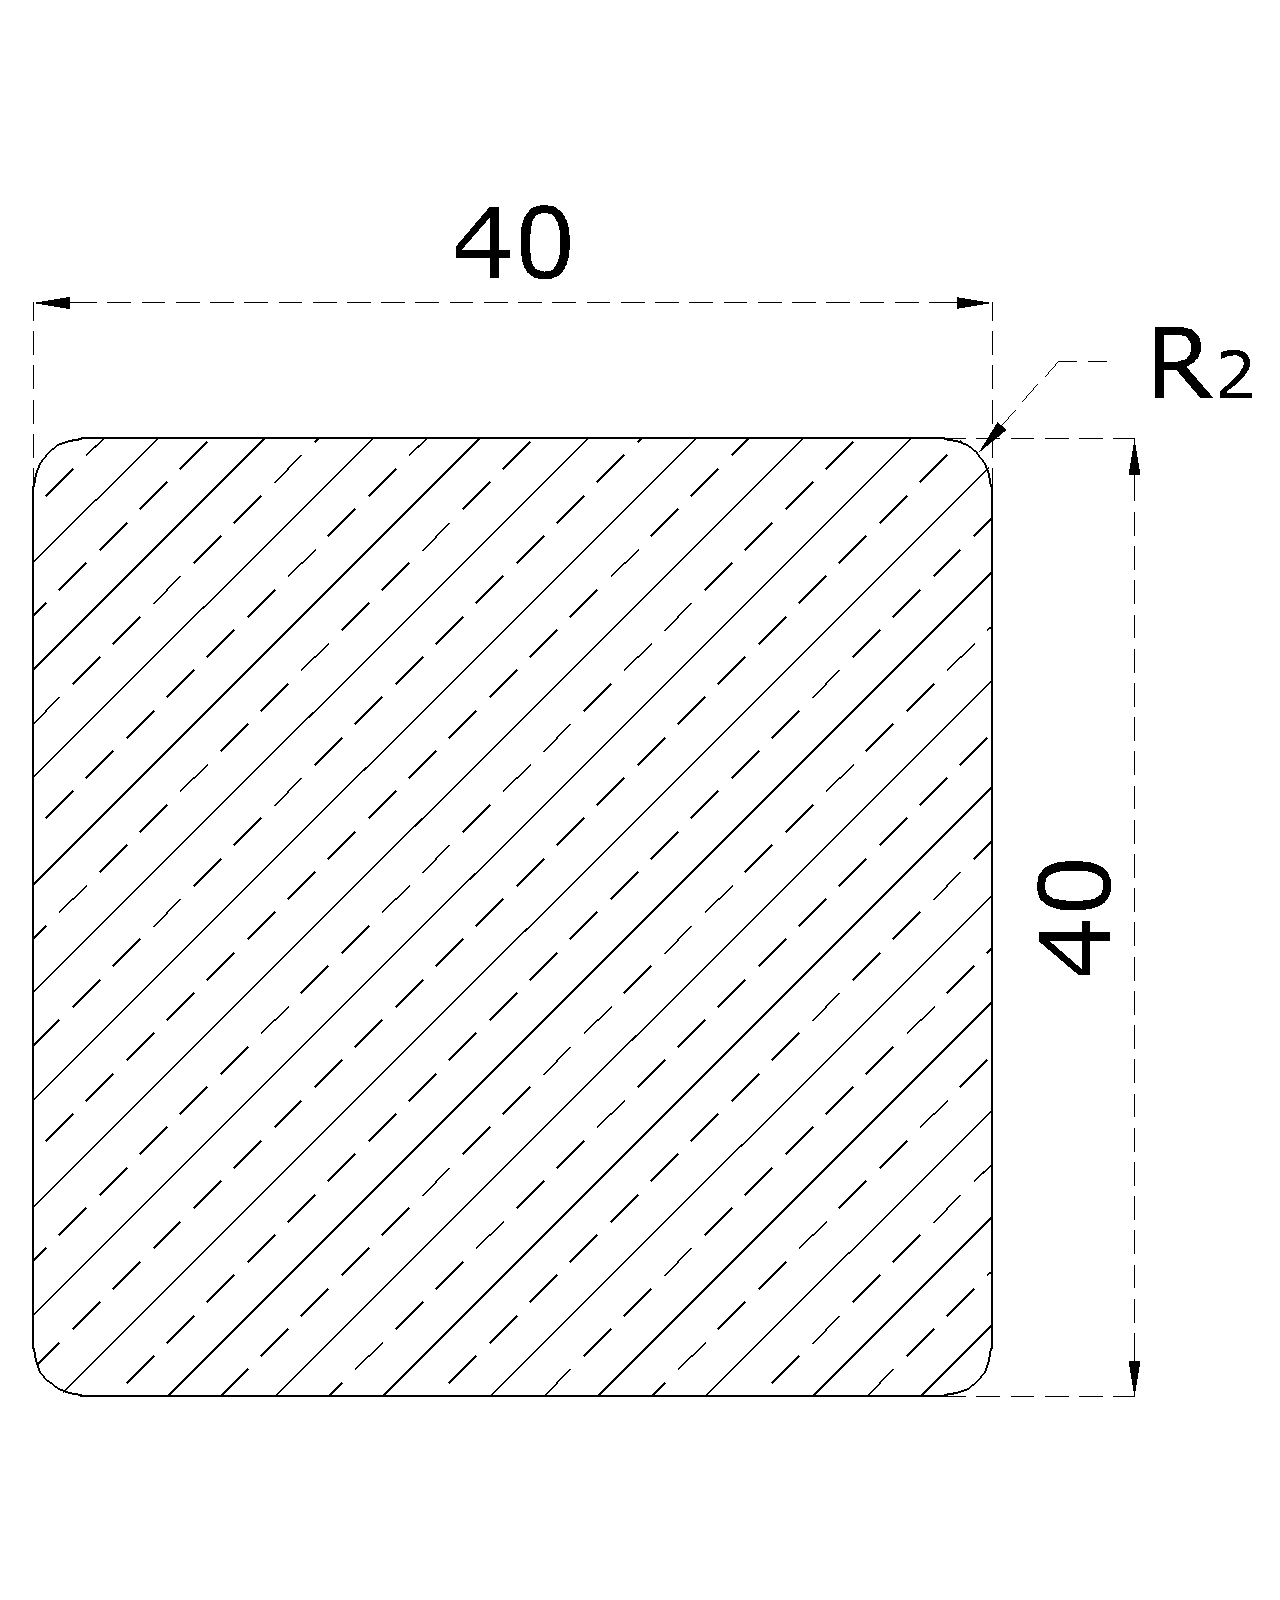 Dřevěný profil čtvercový (40x40 mm / L: 2500 mm) materiál: buk, broušený povrch bez nátěru, balení: PVC fólie